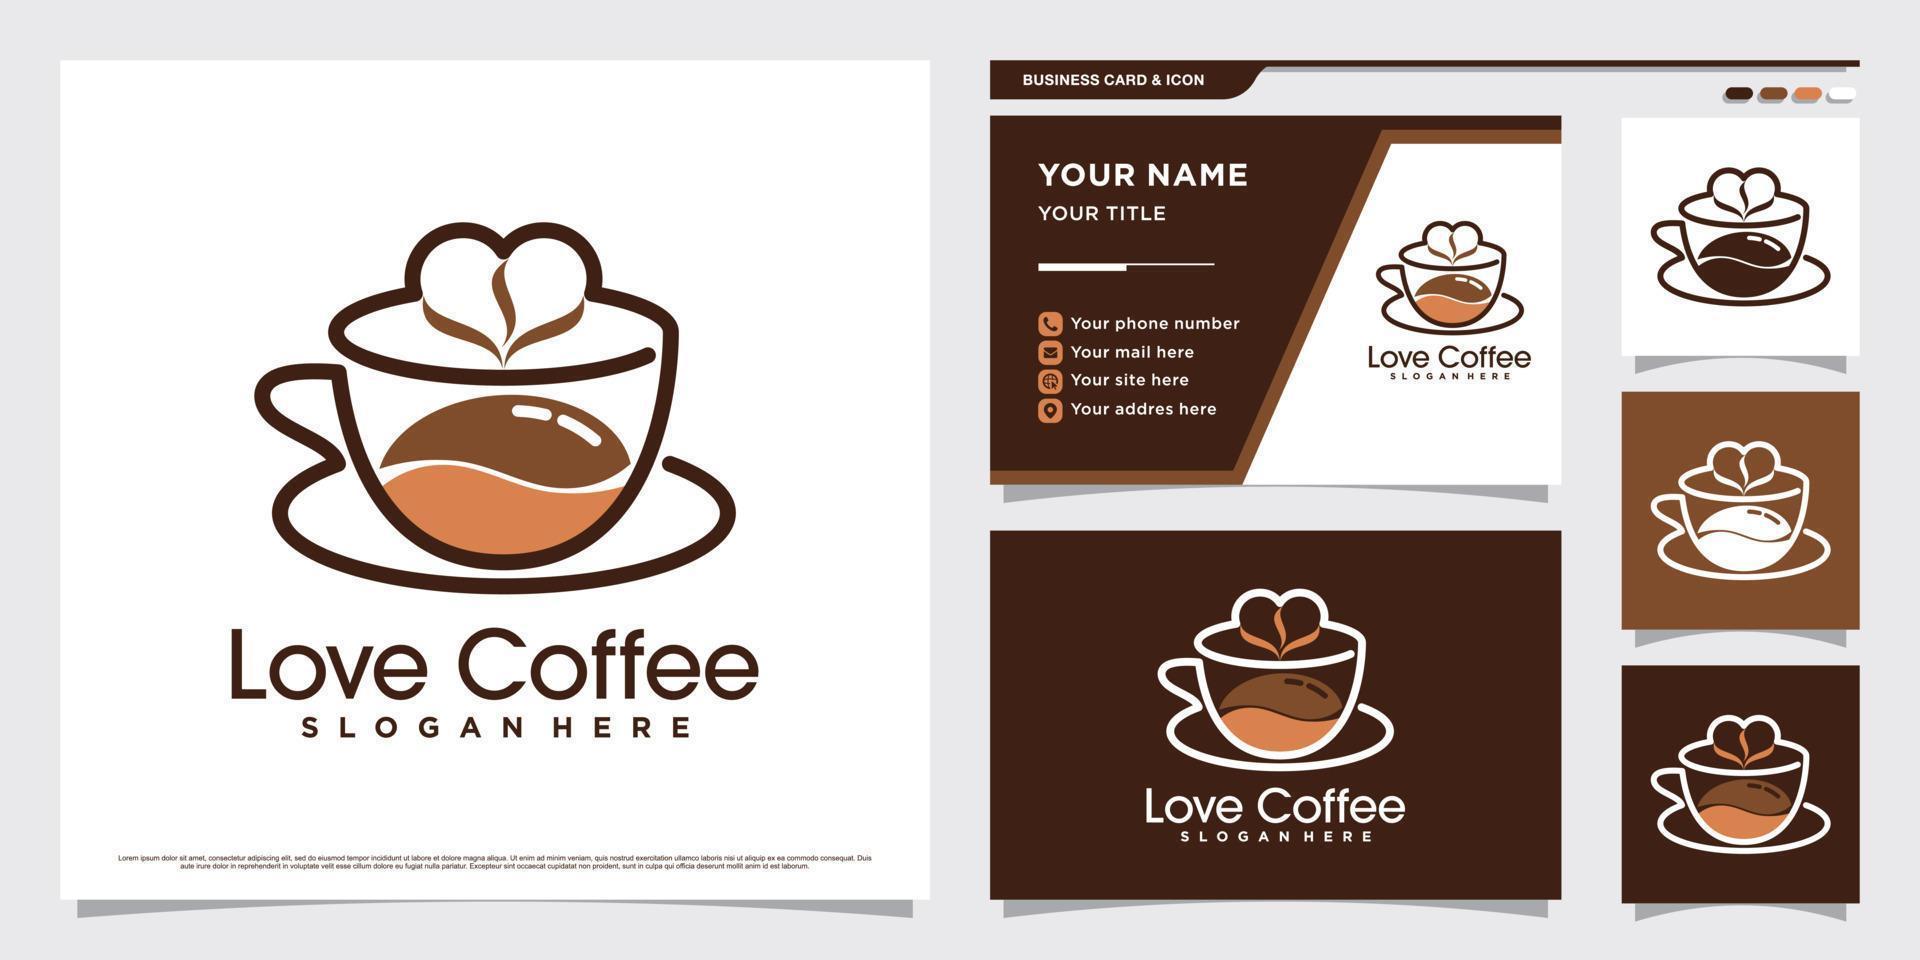 kaffeetasse-logo-designillustration für kaffeeliebhaber mit herzelement und visitenkartenschablone vektor